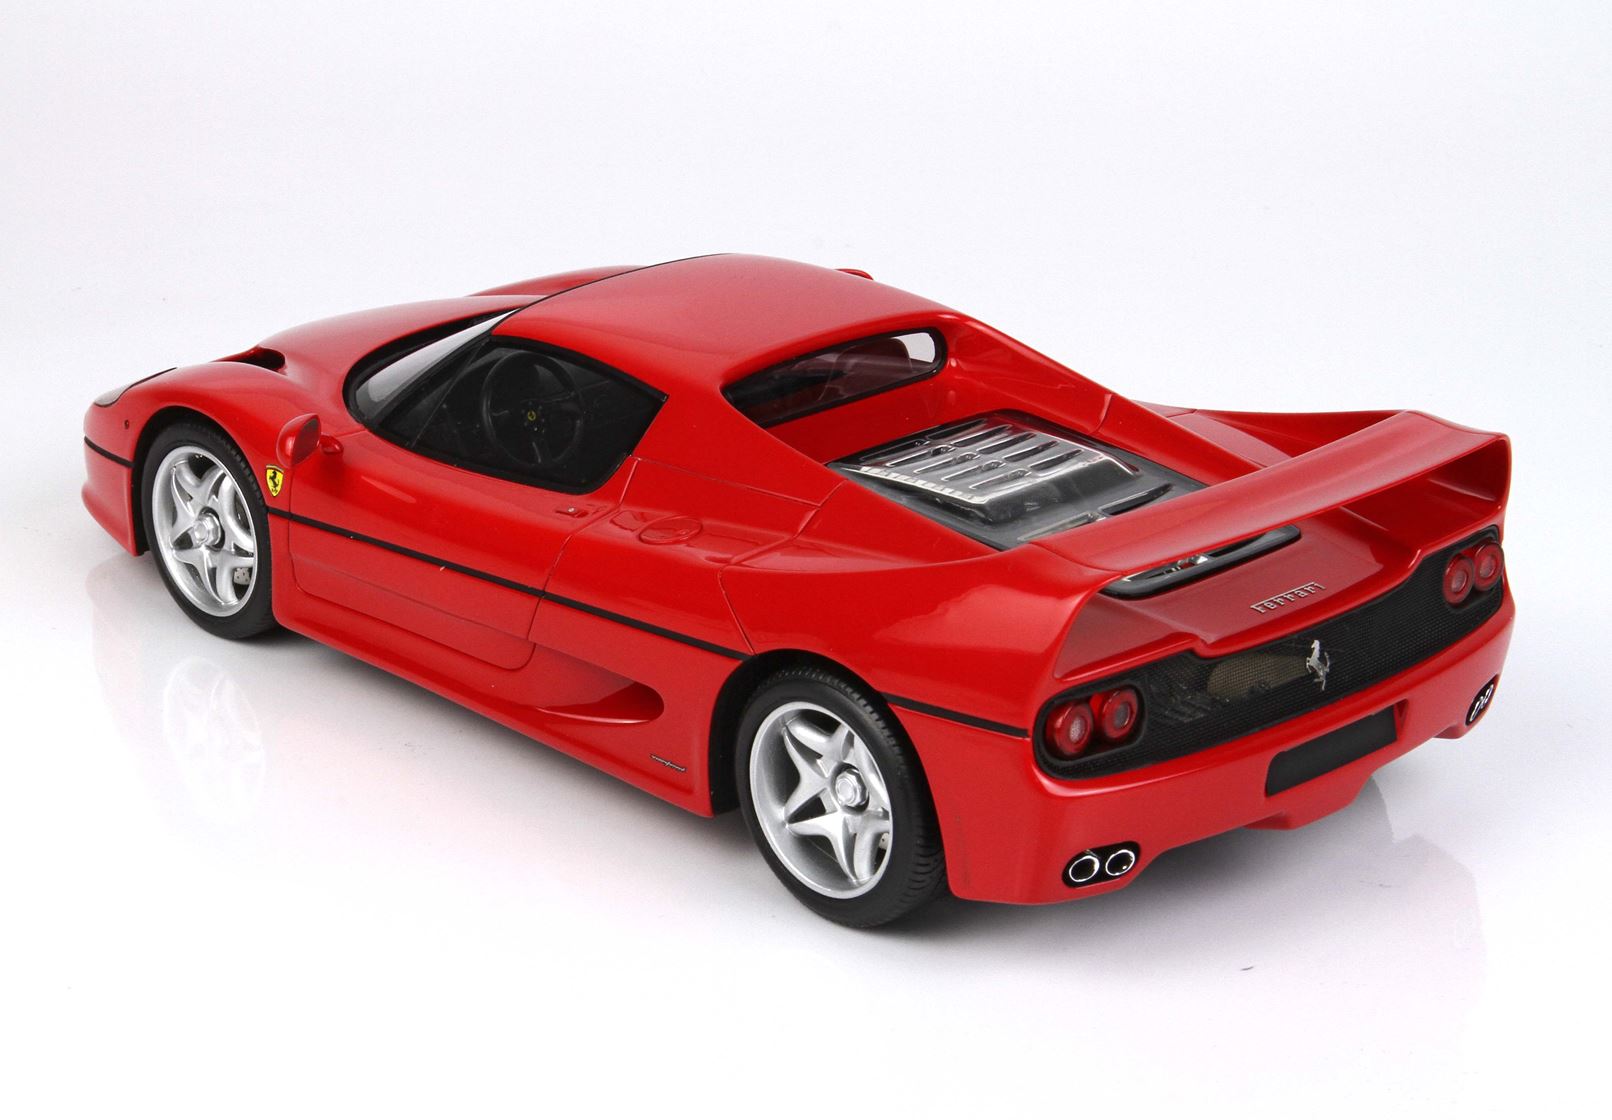 BBR Ferrari F50 1:18 scale